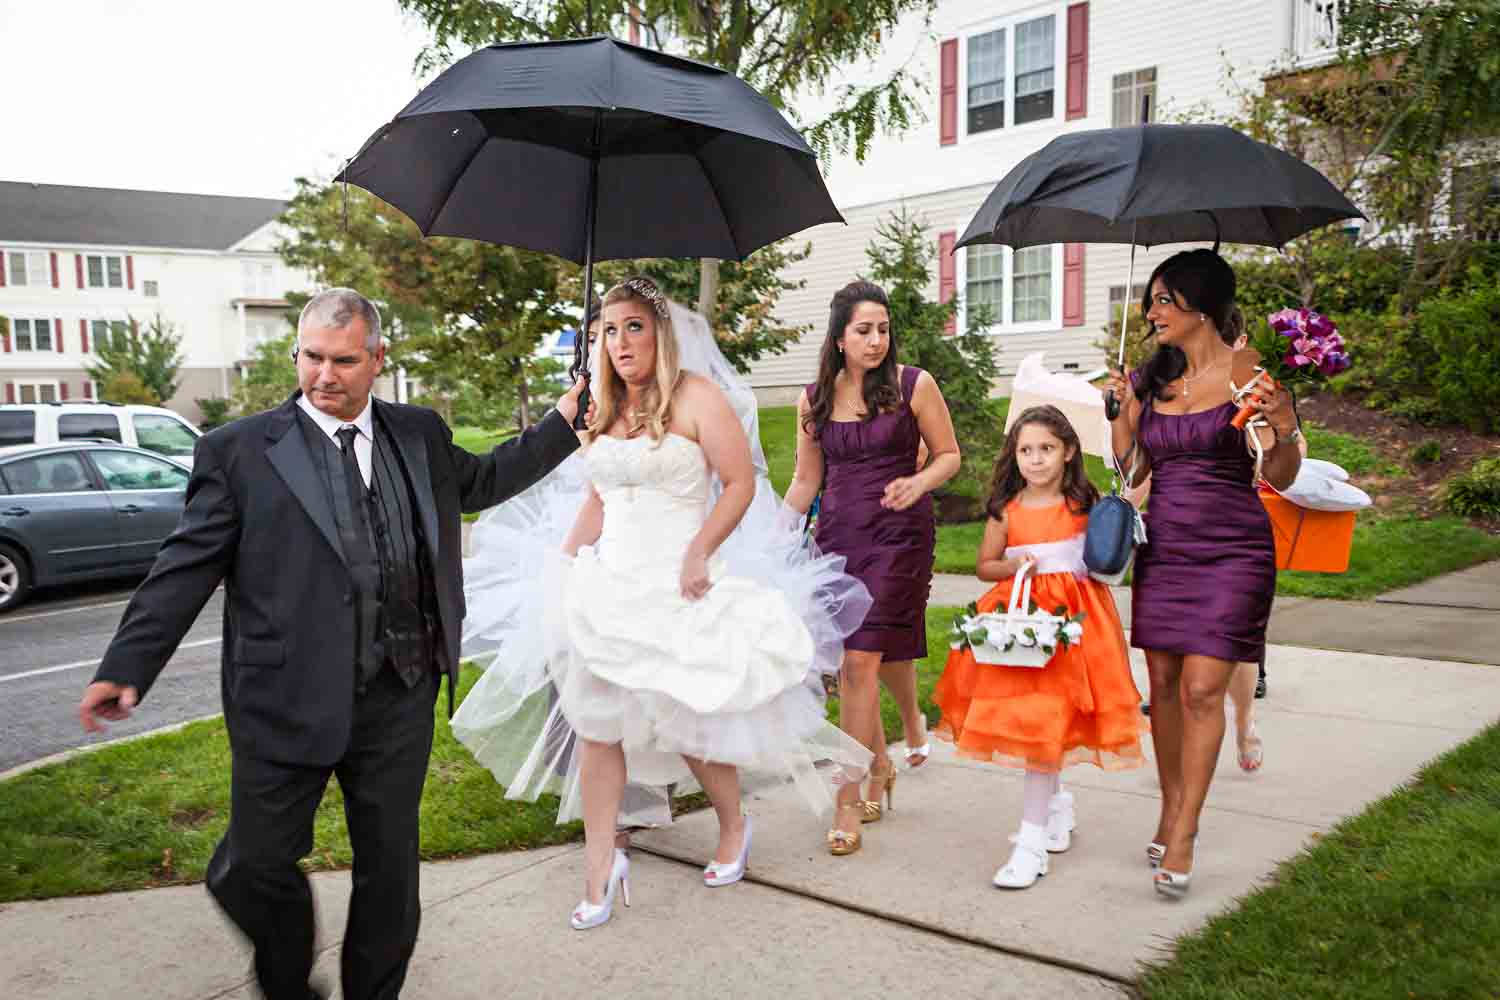 Bride and bridal party walking under umbrellas